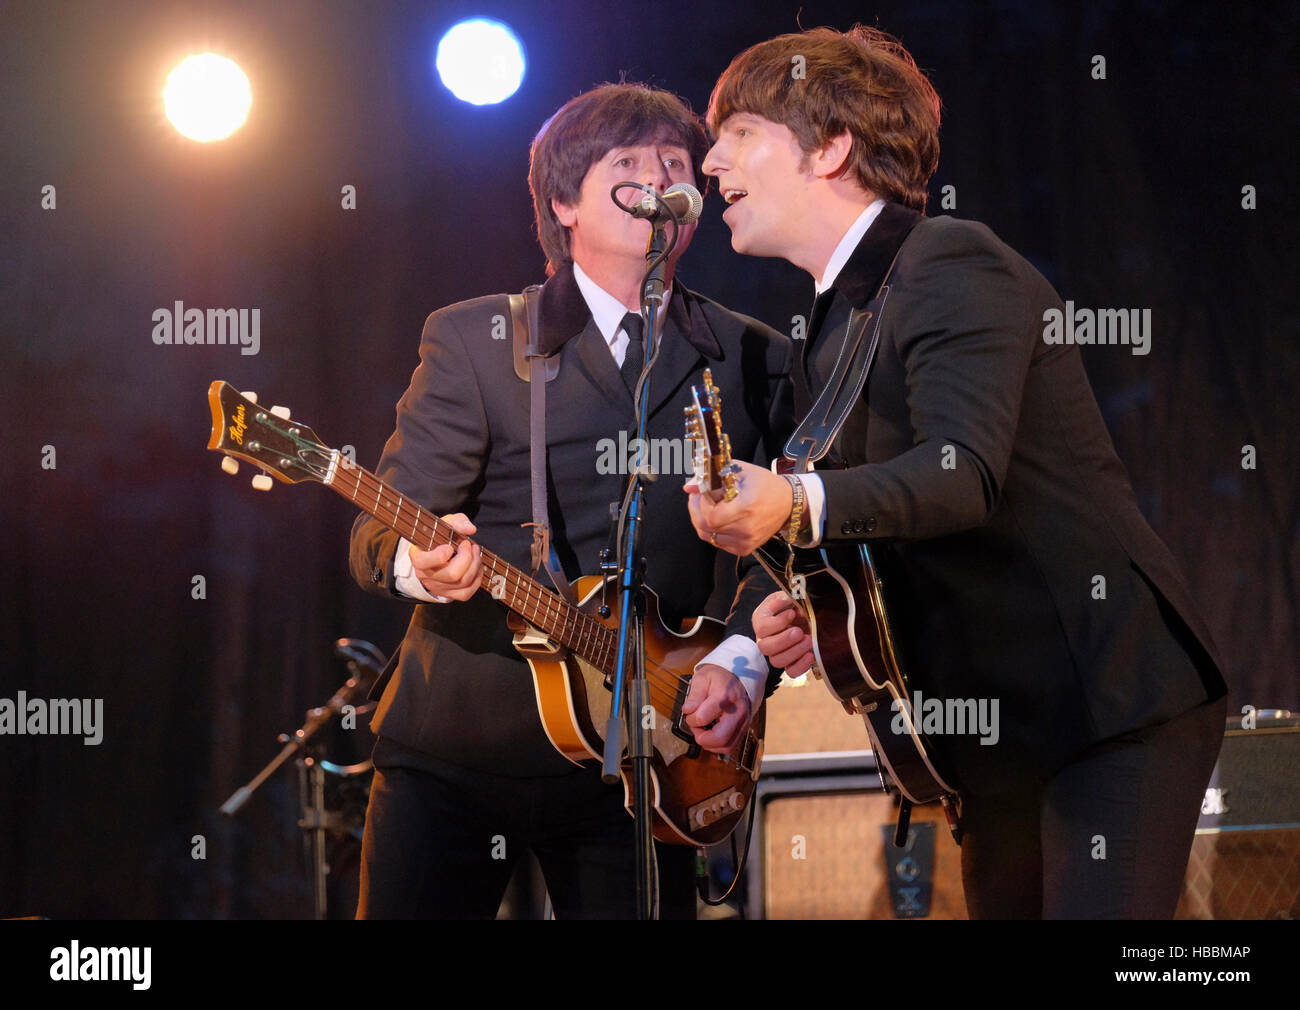 Steve White y Stephen Hill del bootleg Beatles actuando en la Convención Cropredy Fairport, Banbury, Inglaterra, Reino Unido. Agosto 12, 2016 Foto de stock